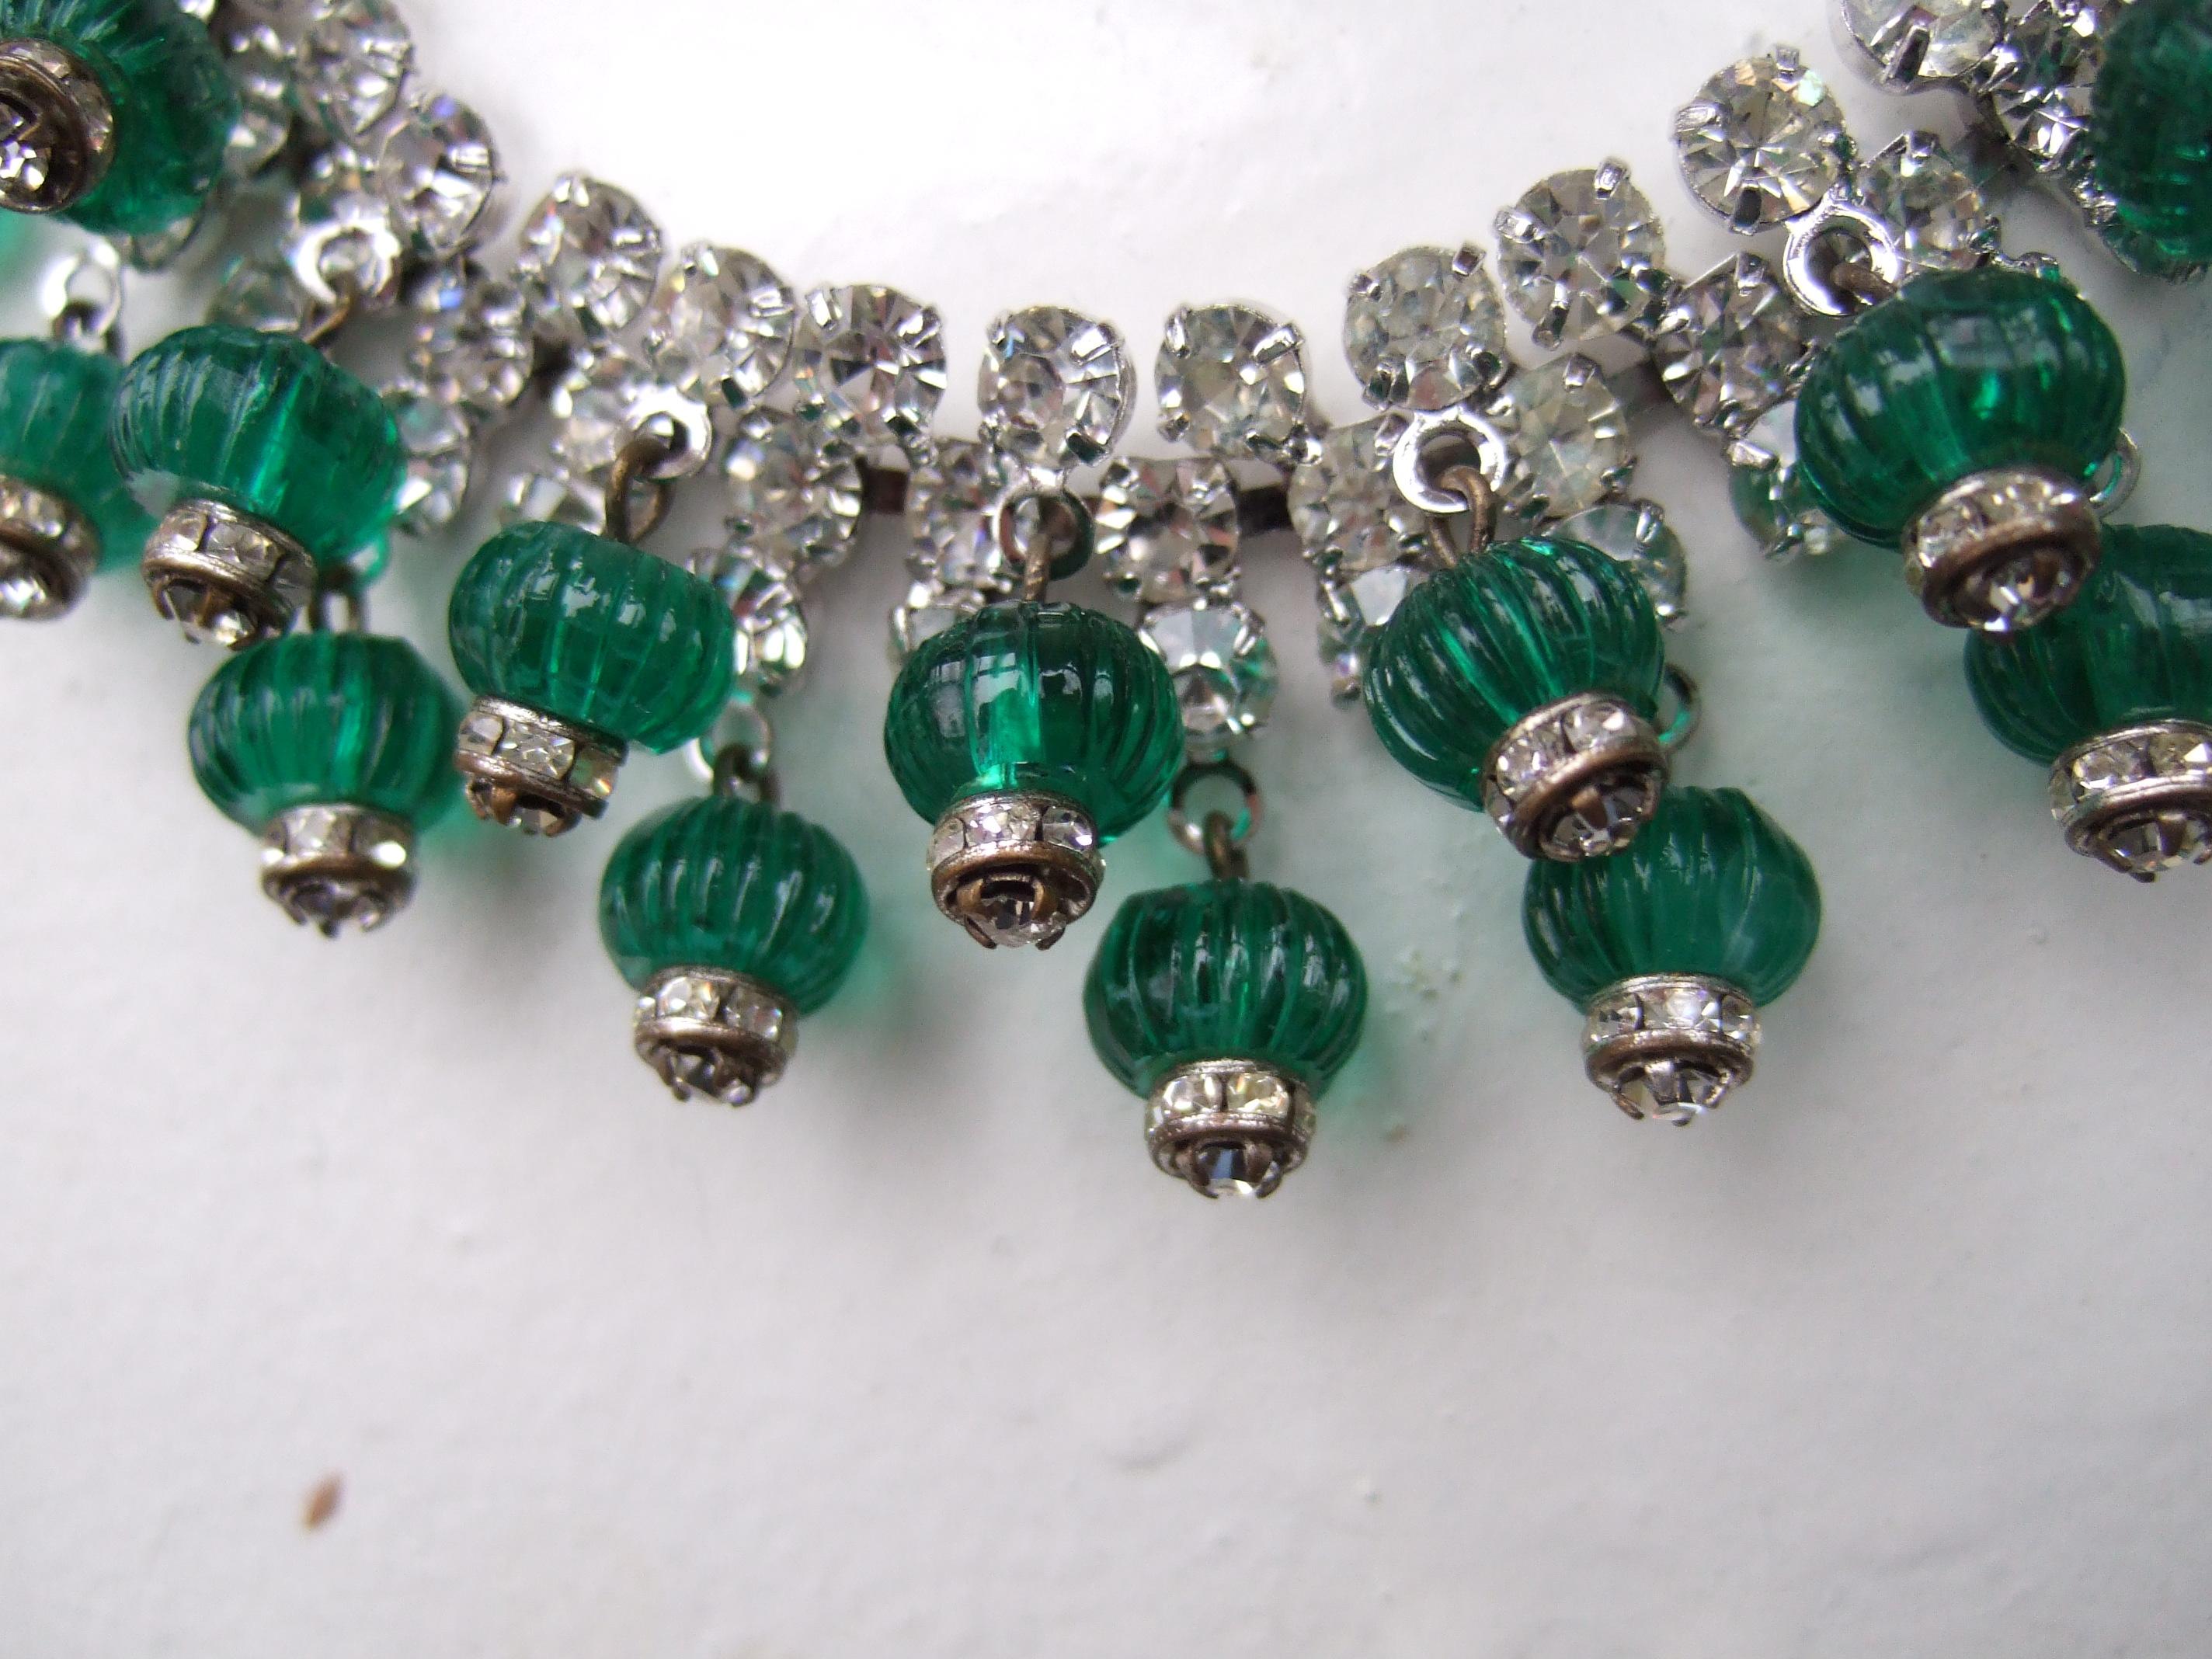 Women's Hattie Carnegie Glass Rhinestone Choker Necklace & Earring Set c 1950s